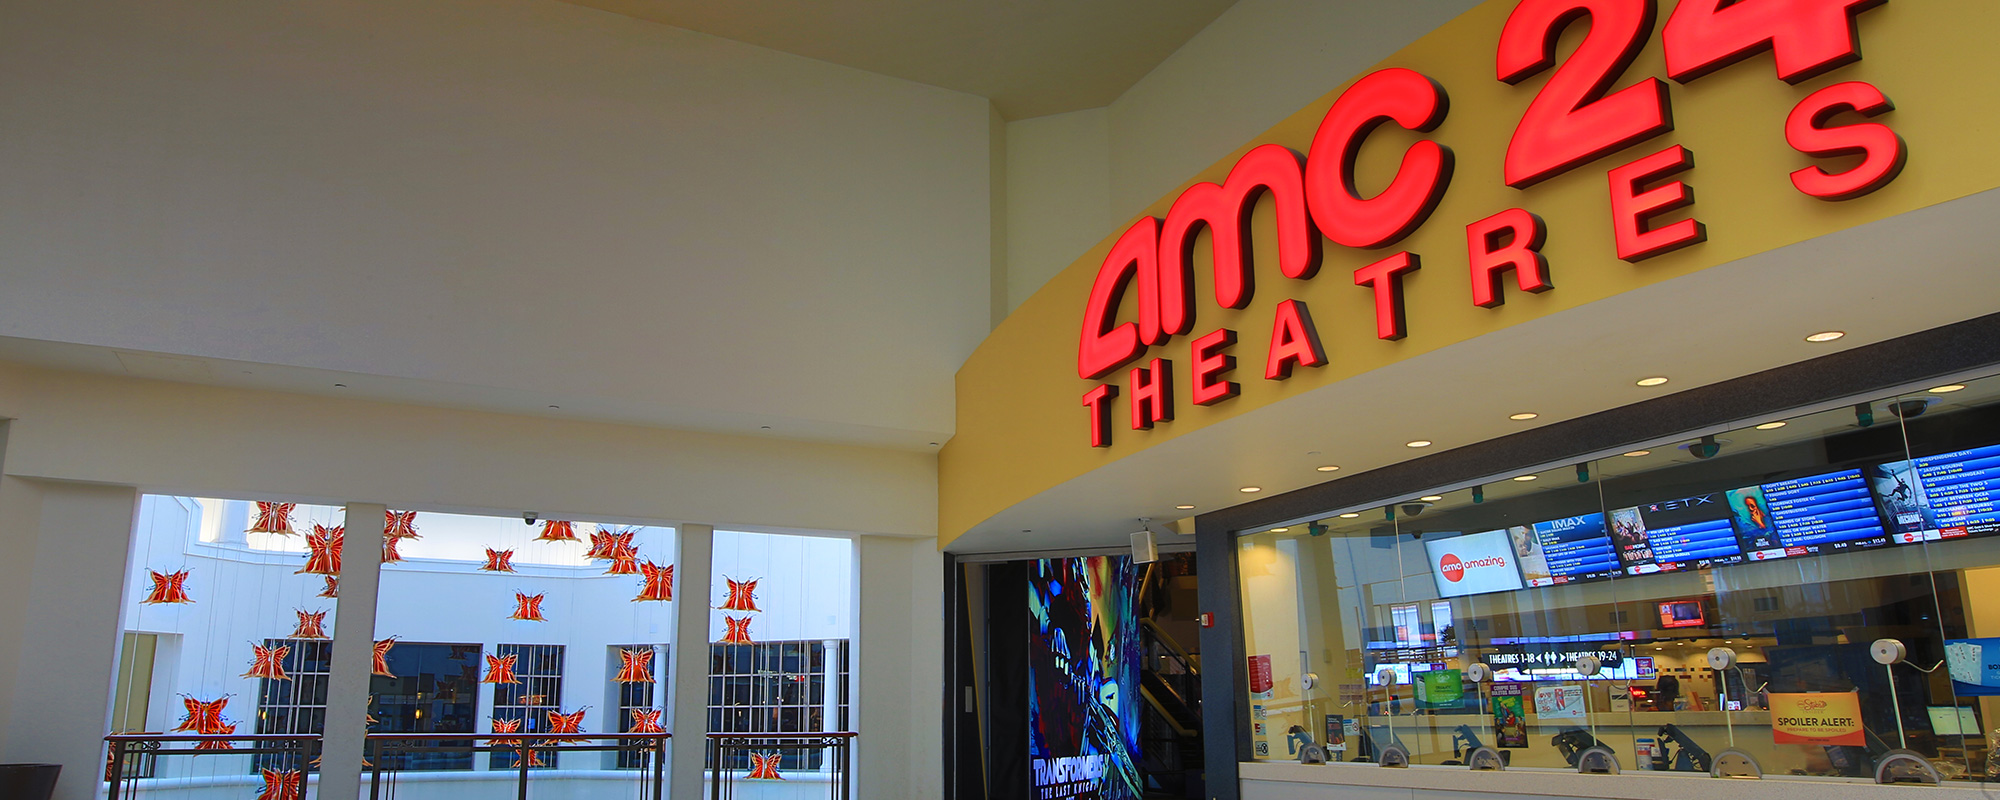 amc 24 theatres